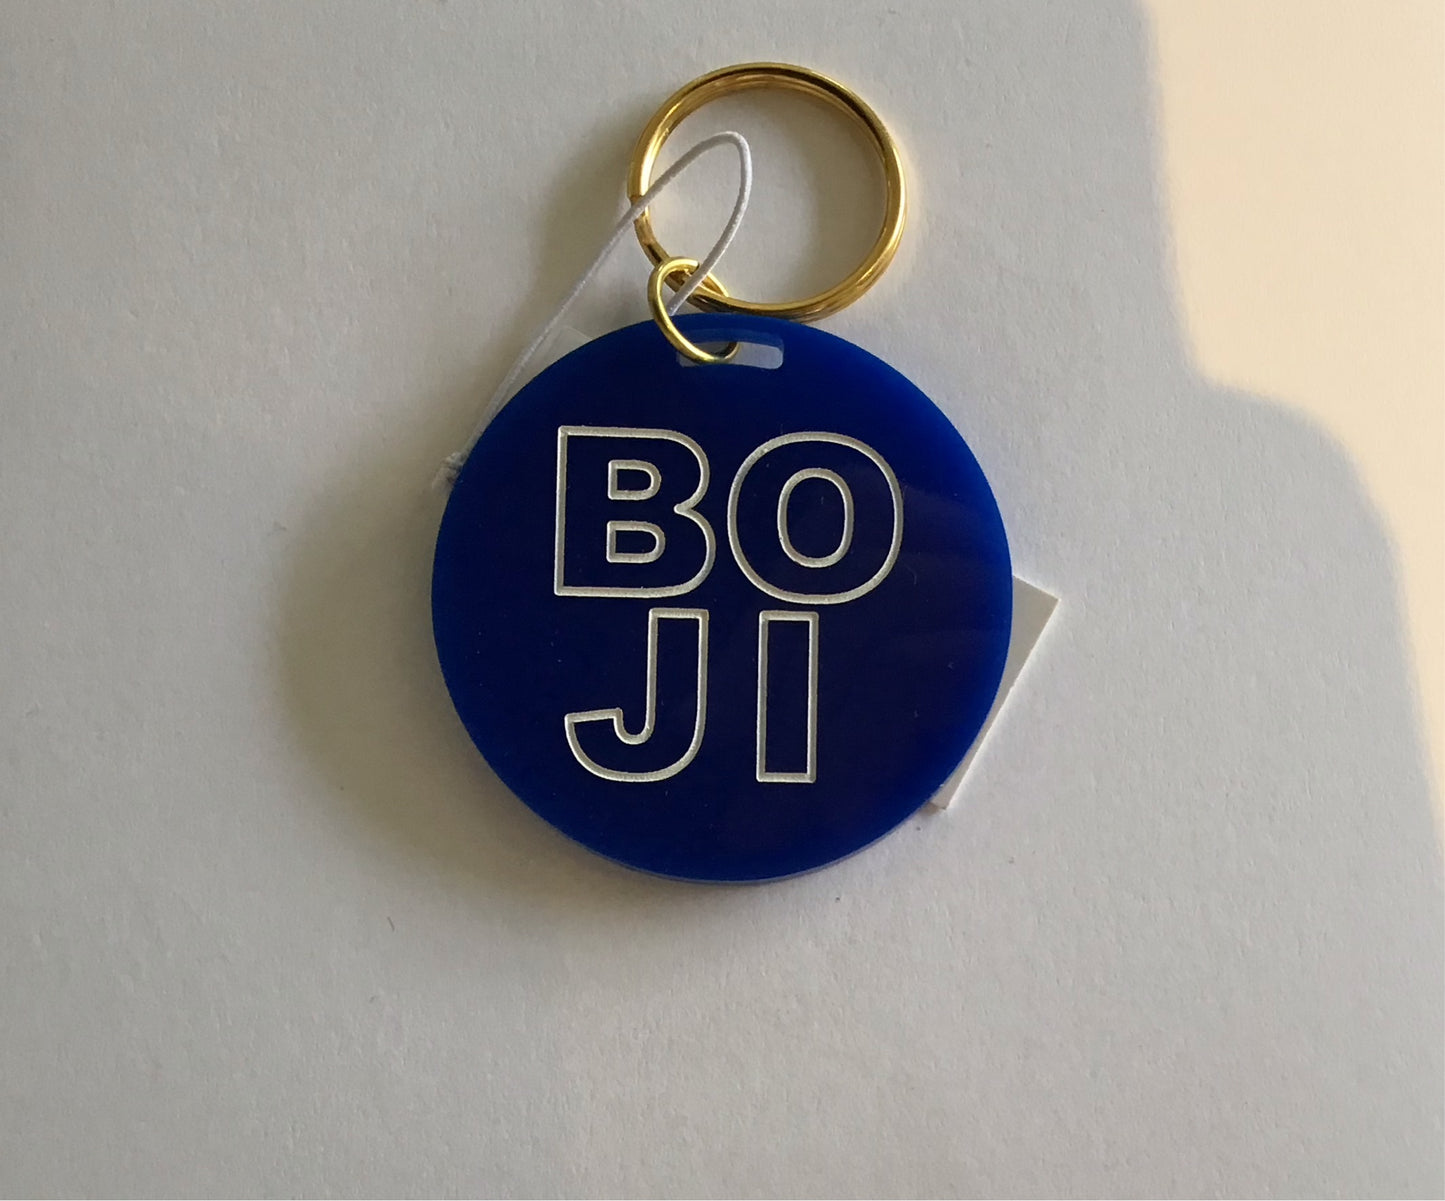 Blue Boji keychain